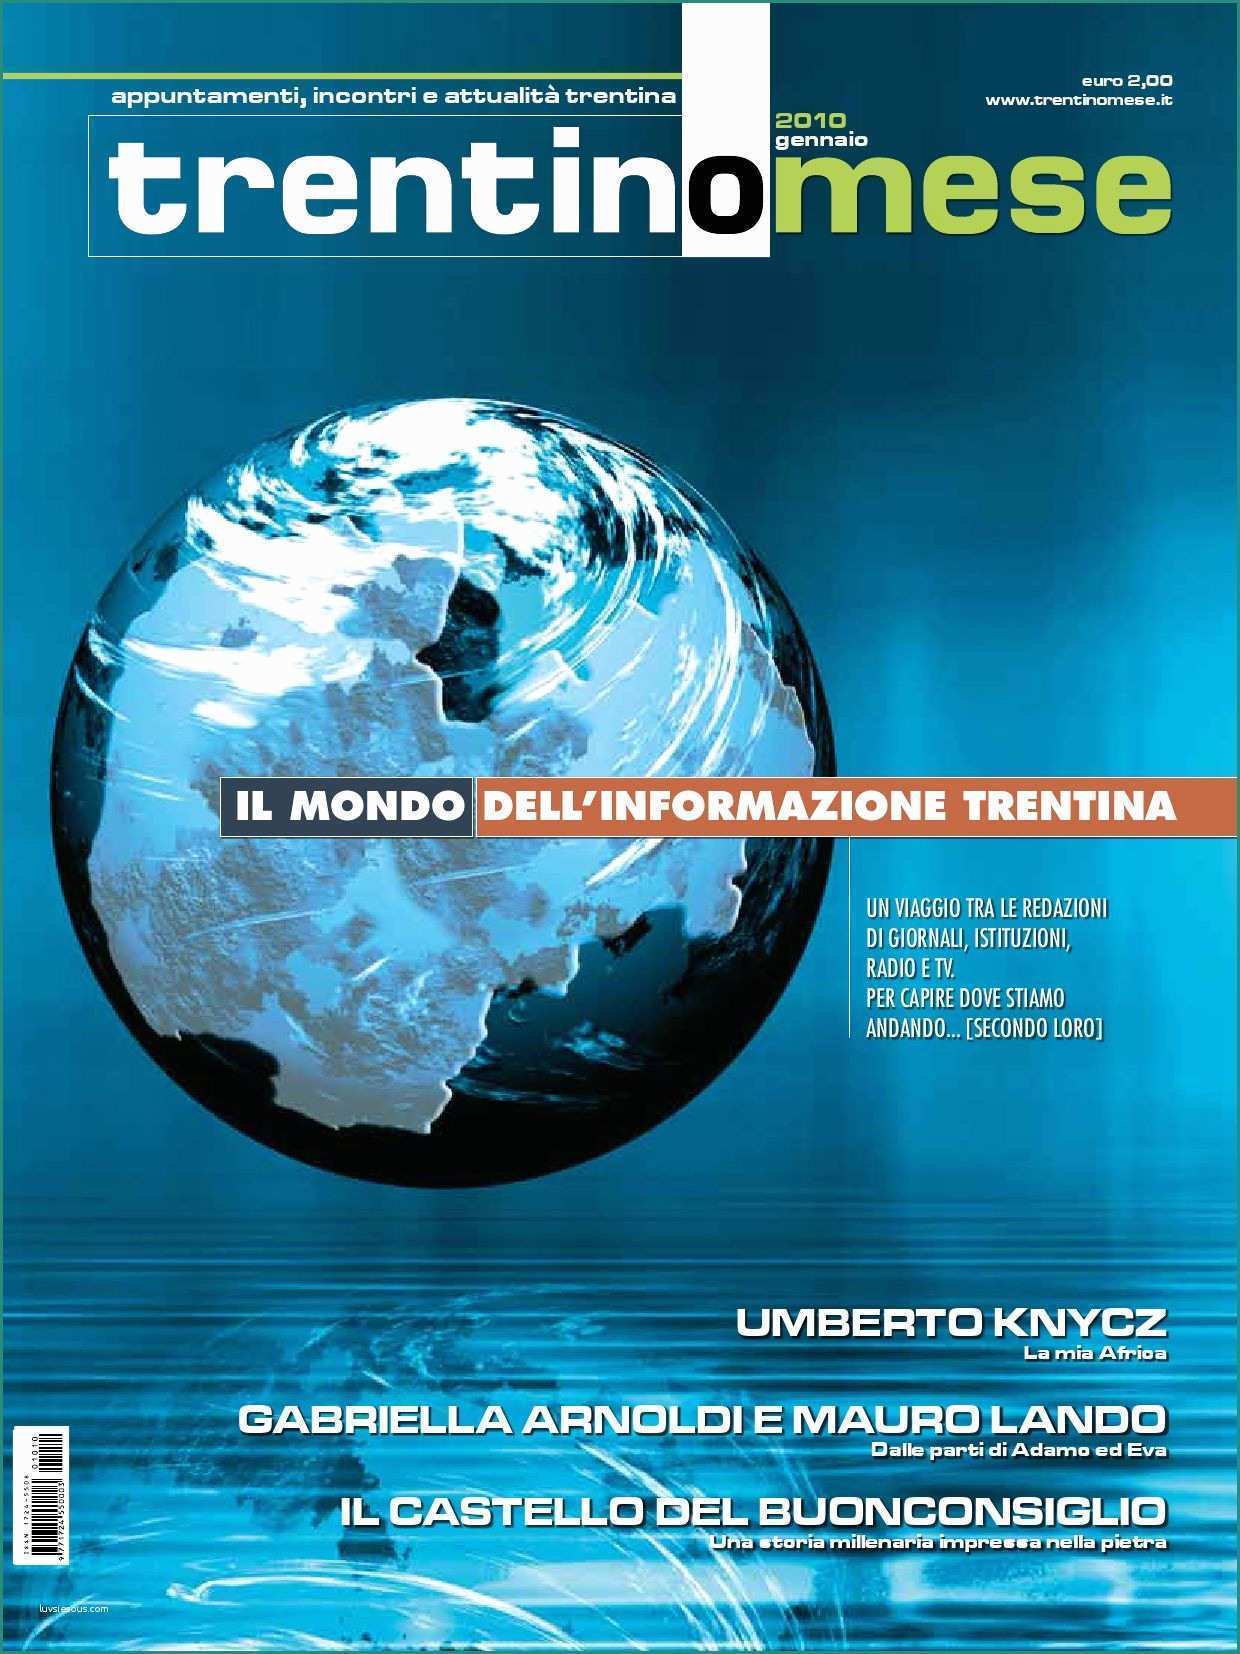 Fossa Biologica Prezzo E Trentinomese Gennaio by Curcu Genovese issuu